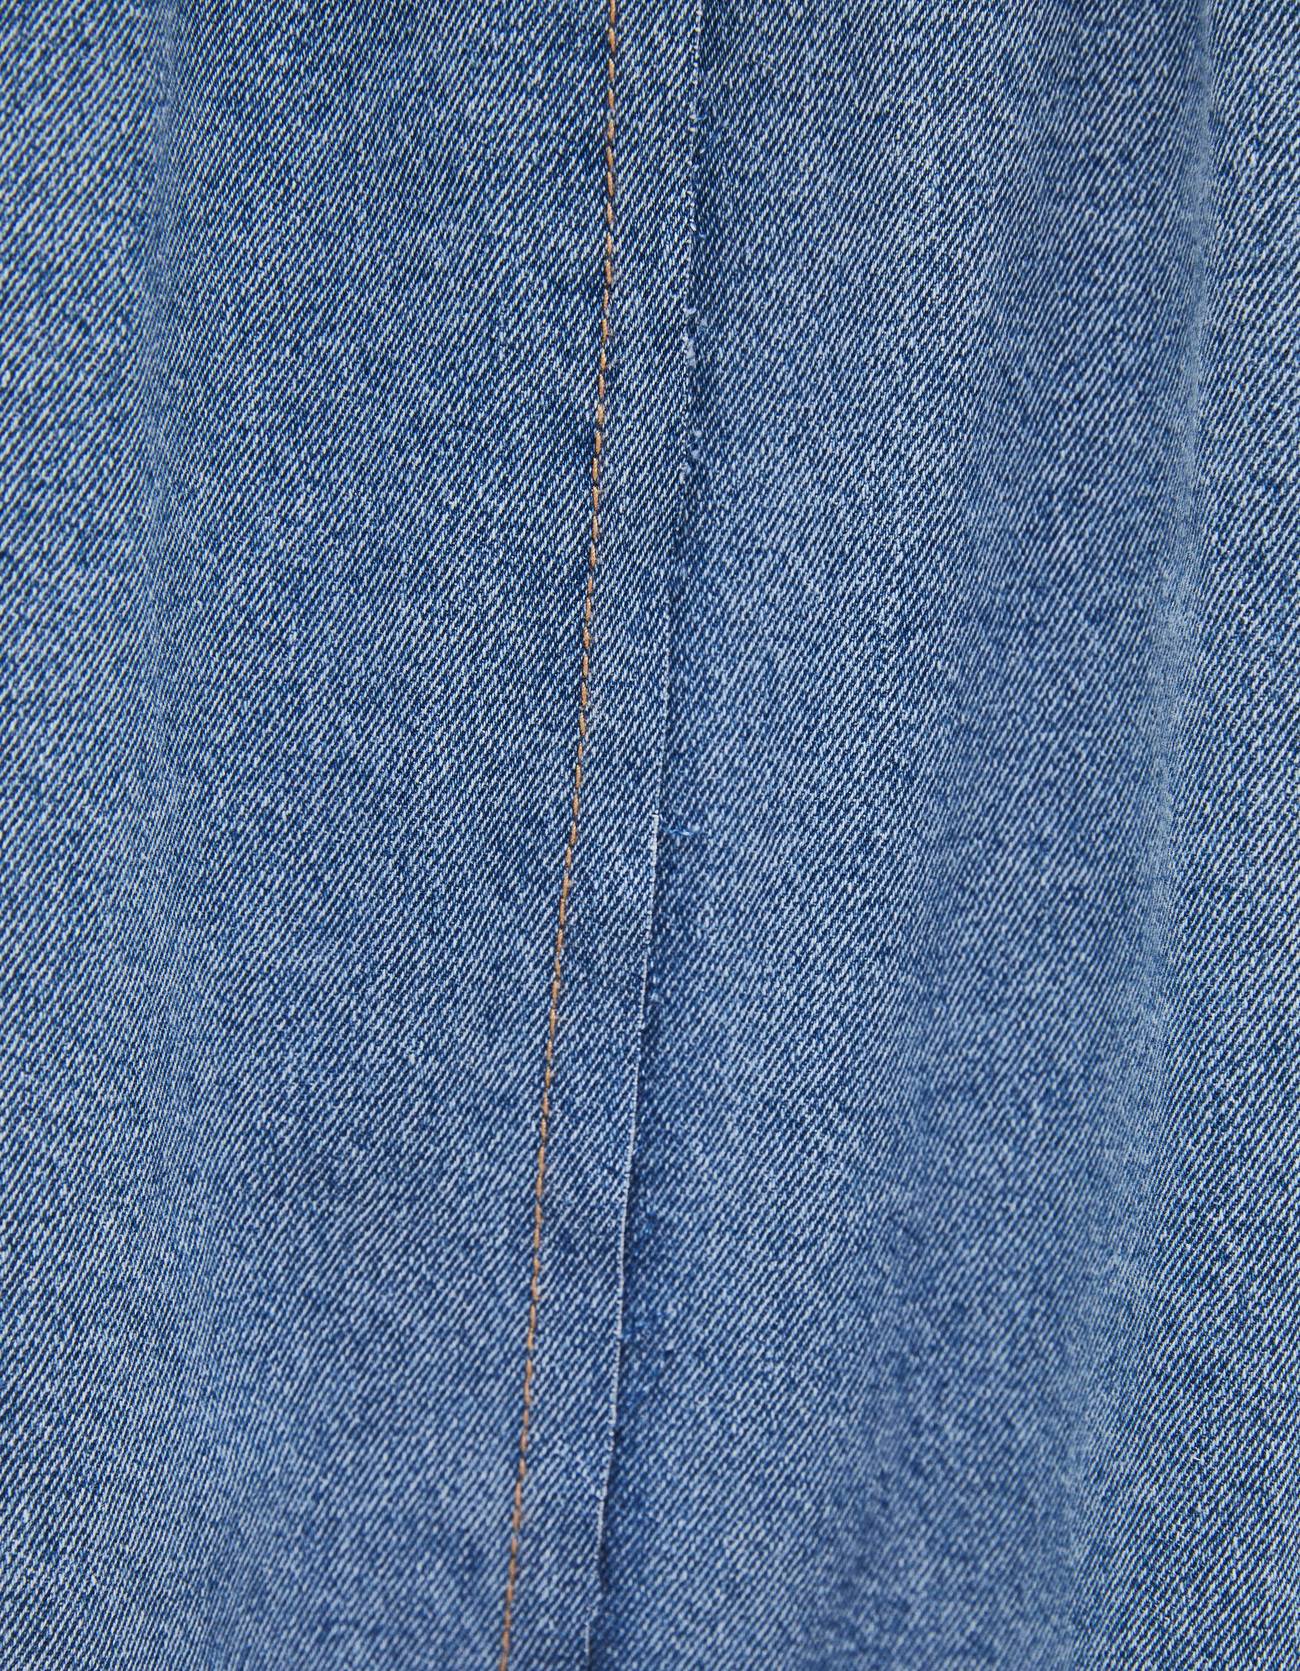 Длинная джинсовая юбка Синий застиранный Bershka